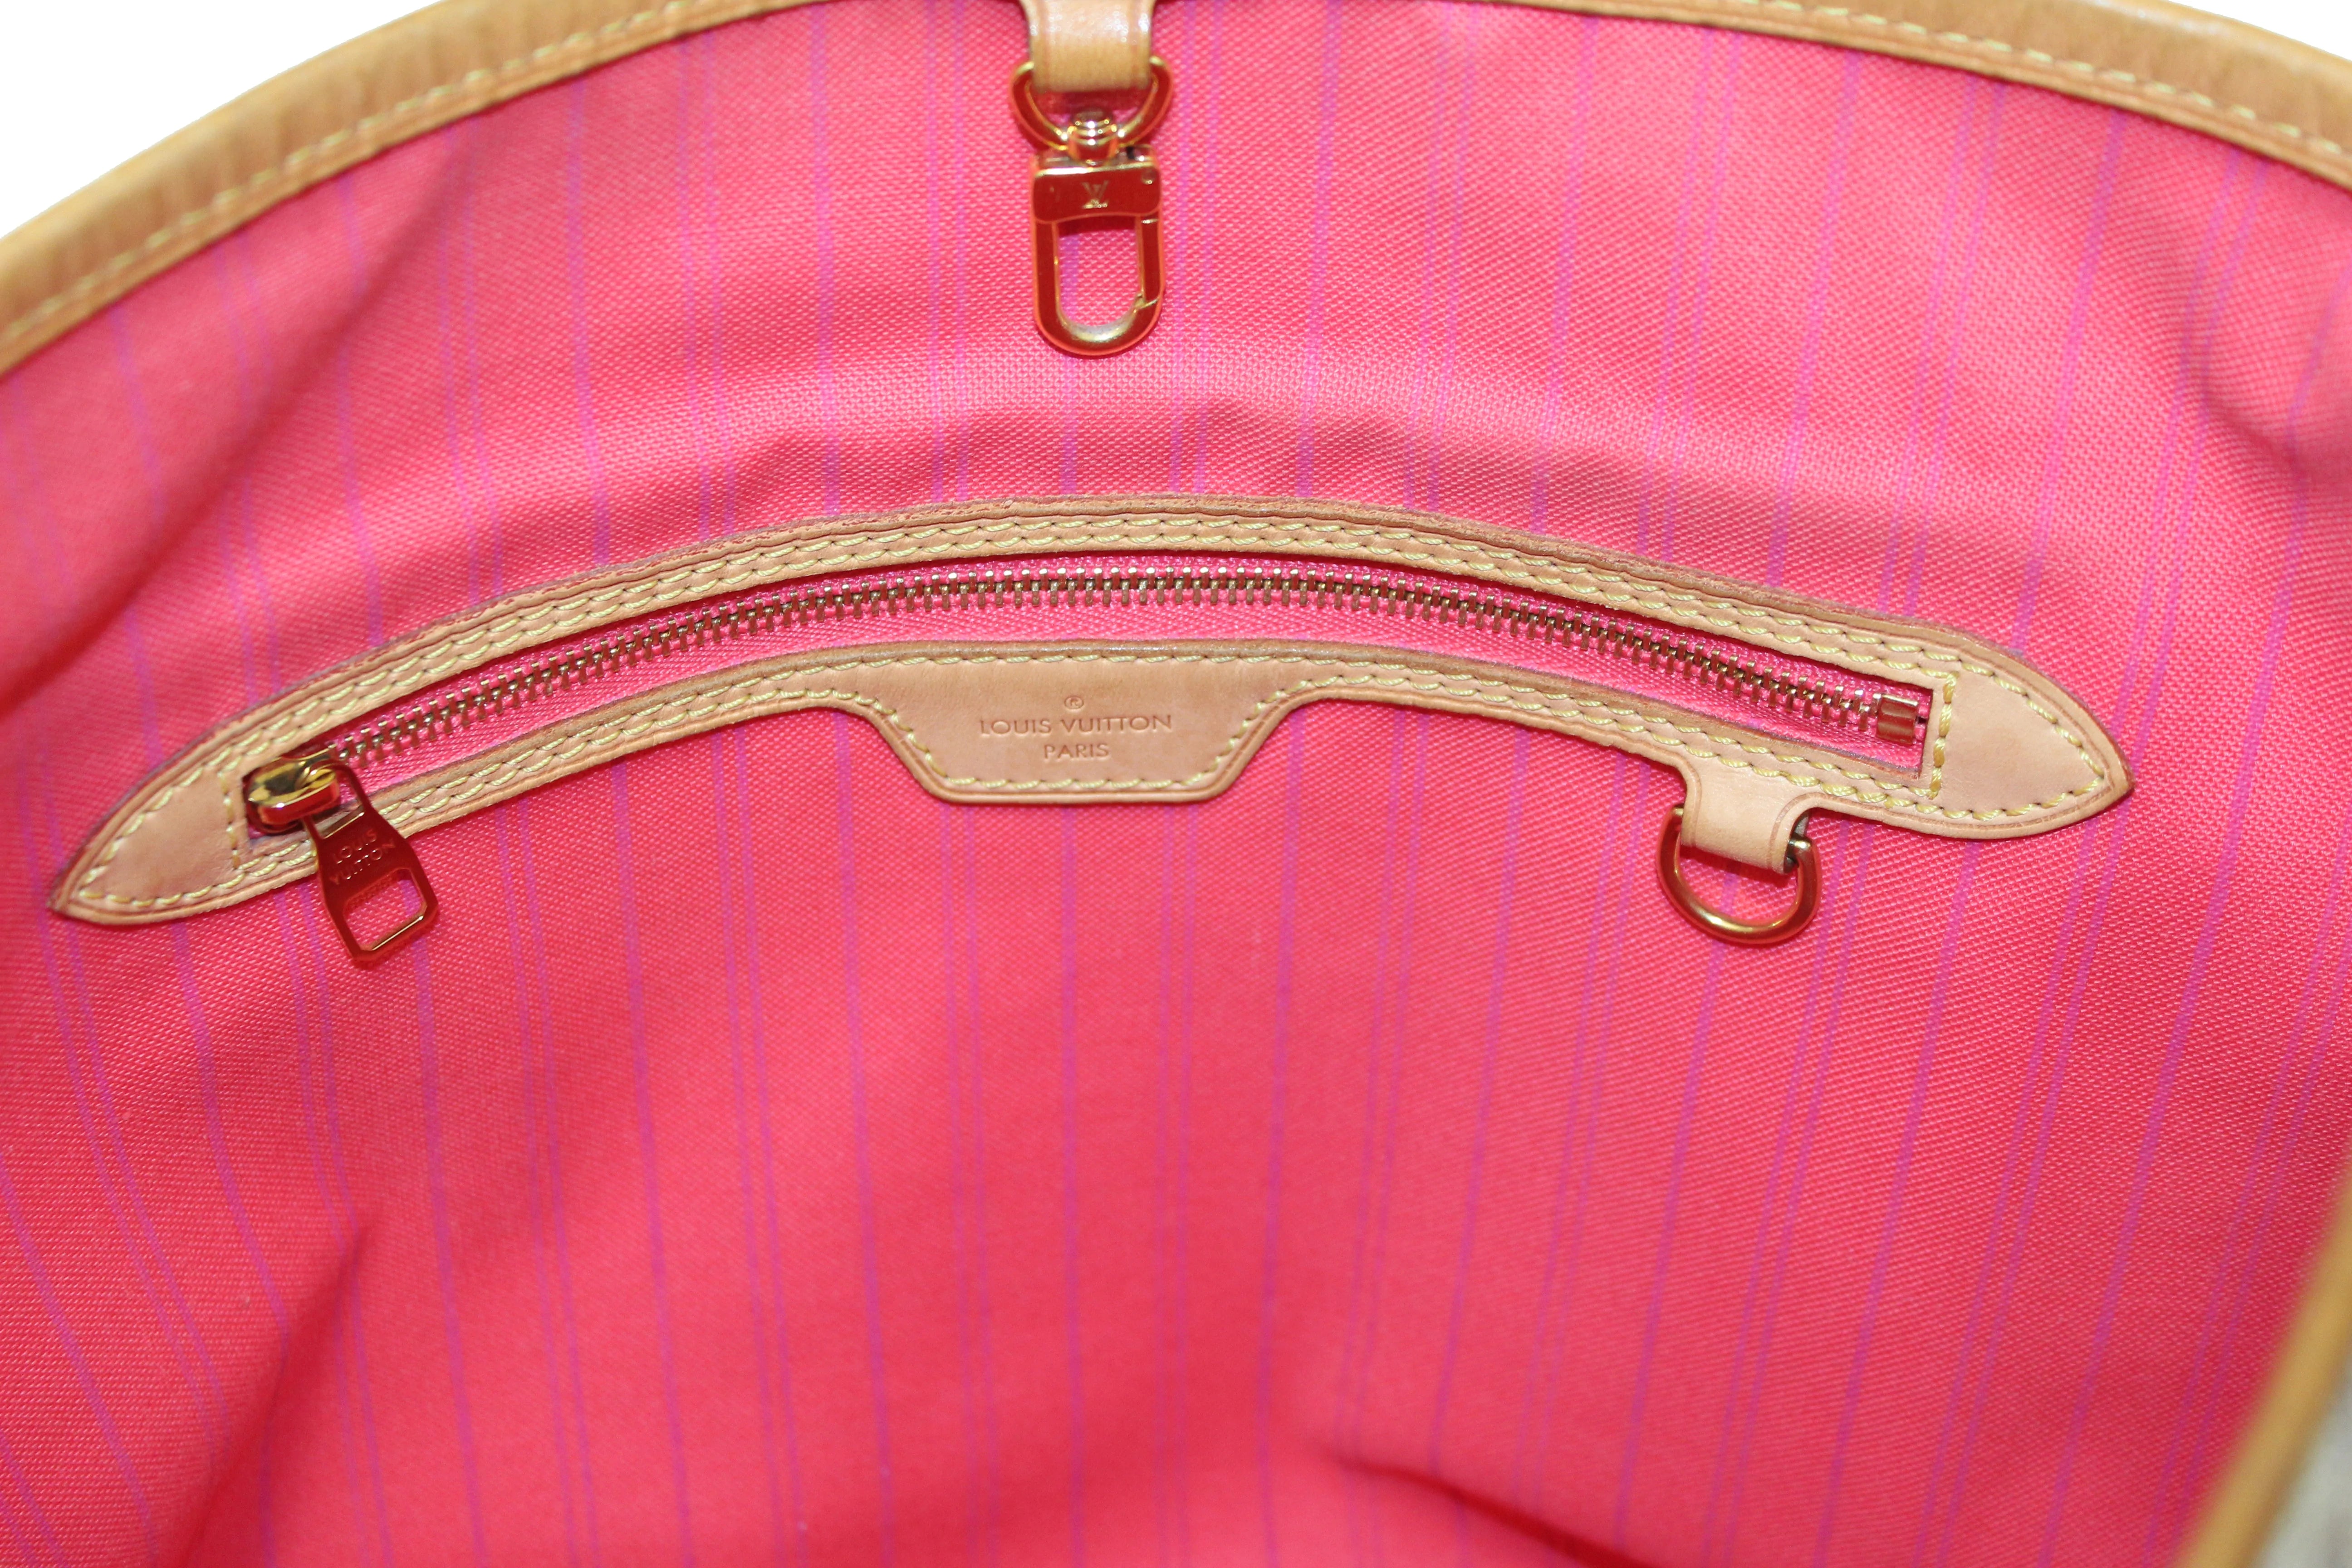 Authentic Louis Vuitton Delightful Hobo Shoulder Tote Handbag